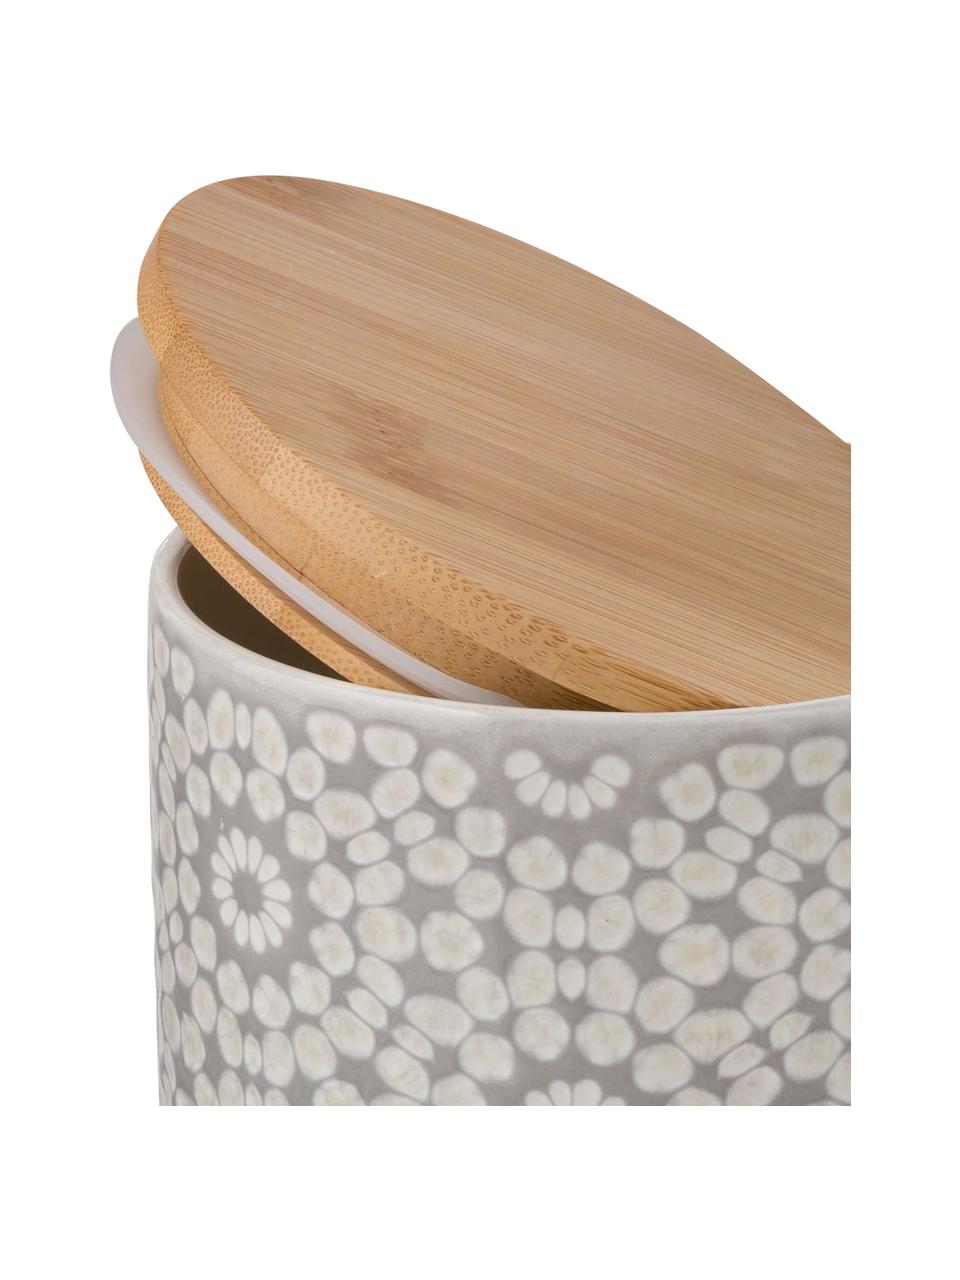 Barattolo con coperchio Abella, Coperchio: legno di bambù, Barattolo: grigio chiaro, bianco Coperchio: bambù, Ø 11 x Alt. 12 cm